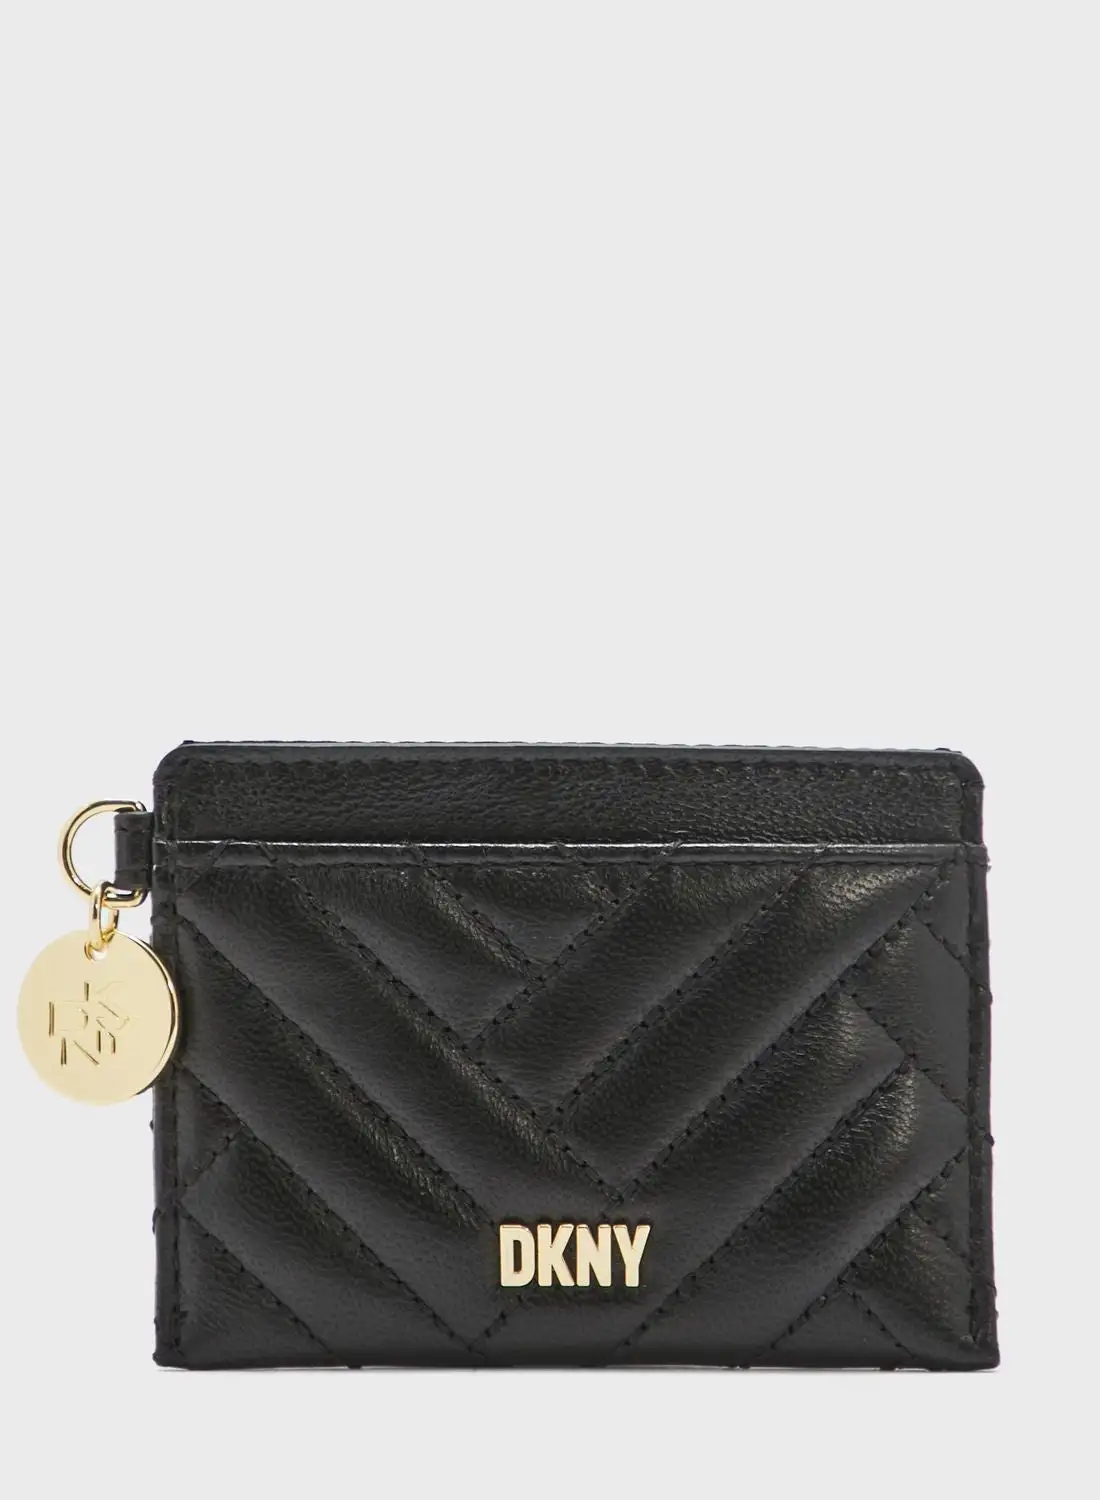 DKNY Beany Card Case Bag